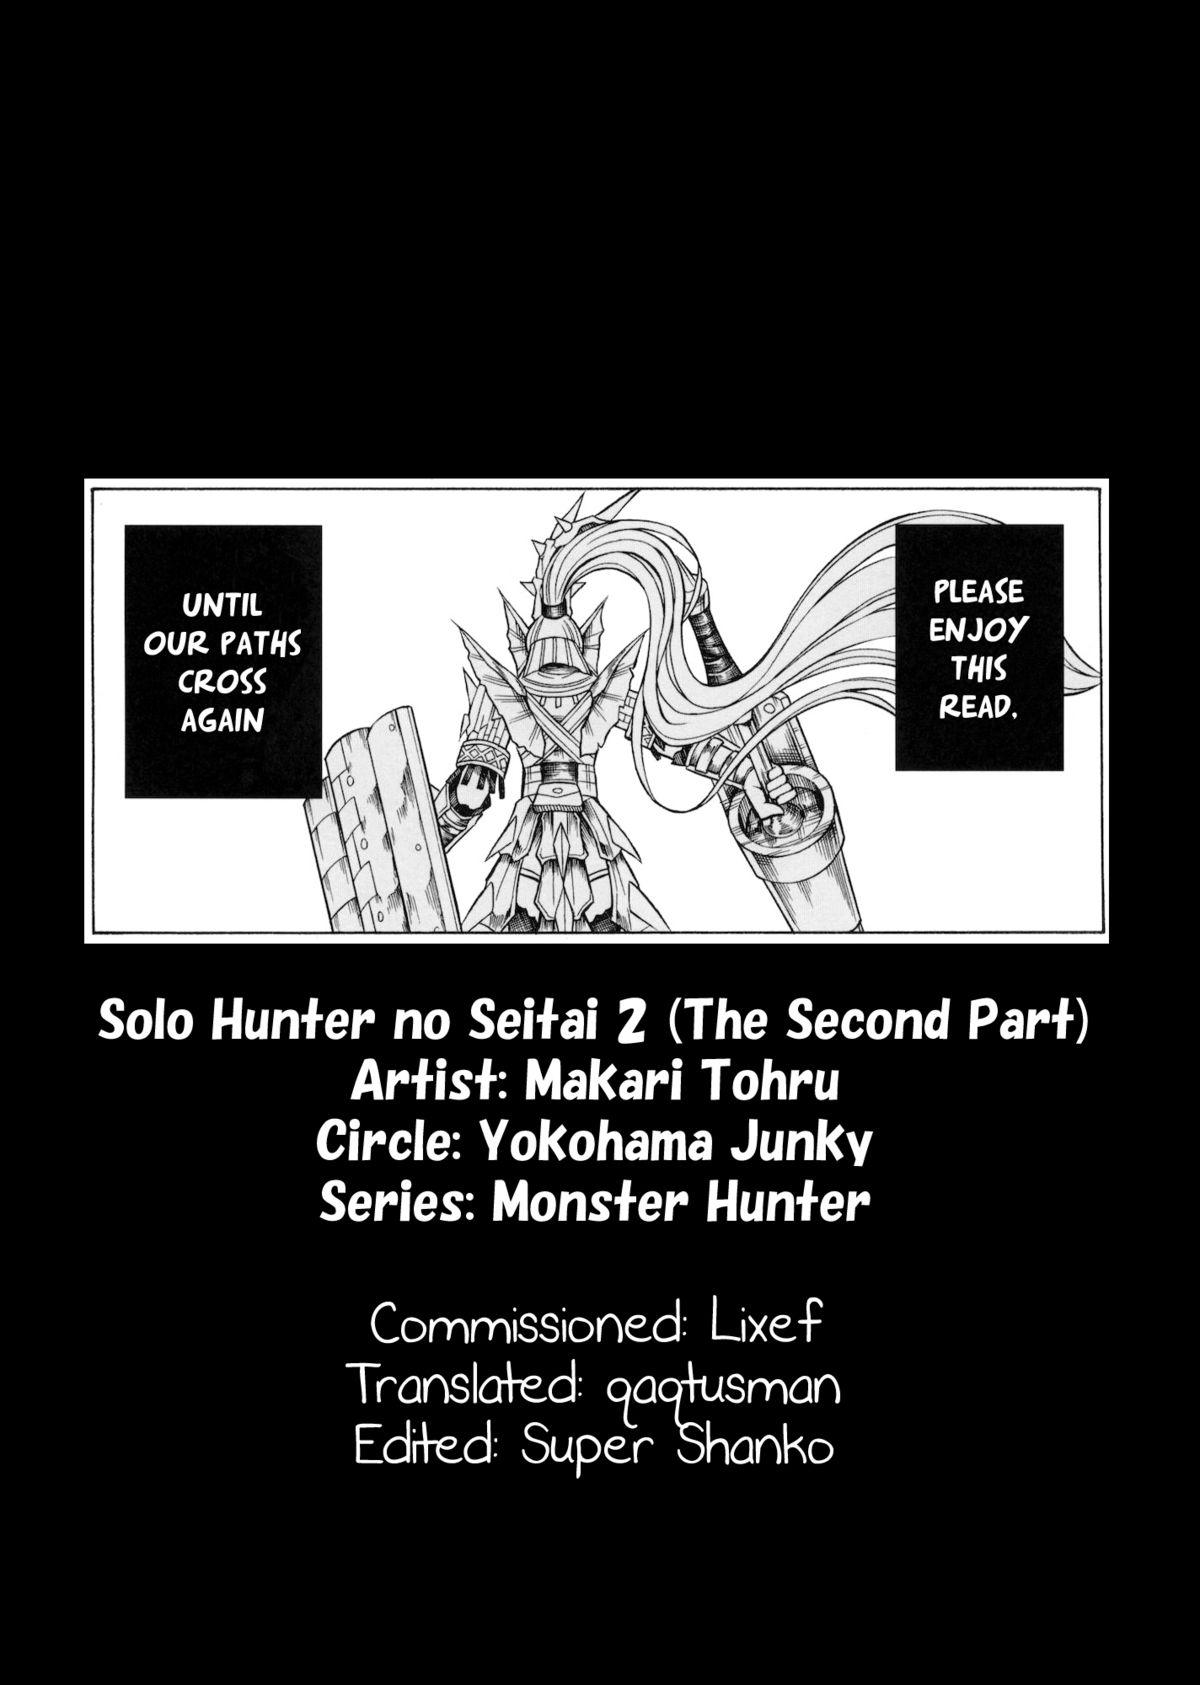 Solo Hunter no Seitai 2 The second part 40